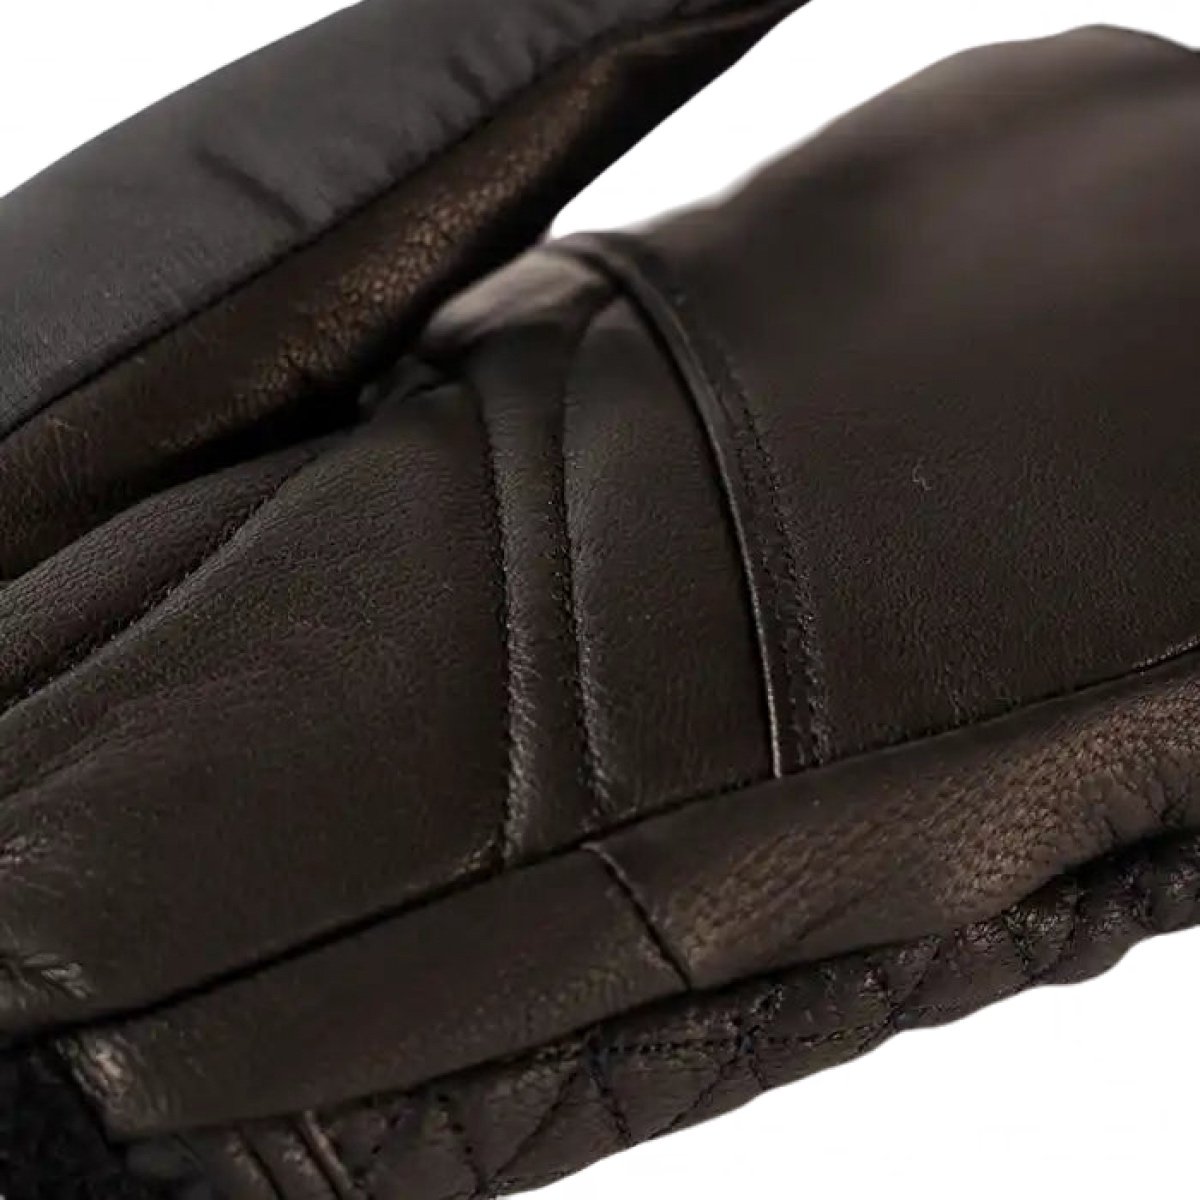 Rukavice vyhřívané Lenz Heat glove 6.0 Finger Cap Mittens W - černá (bez baterie)